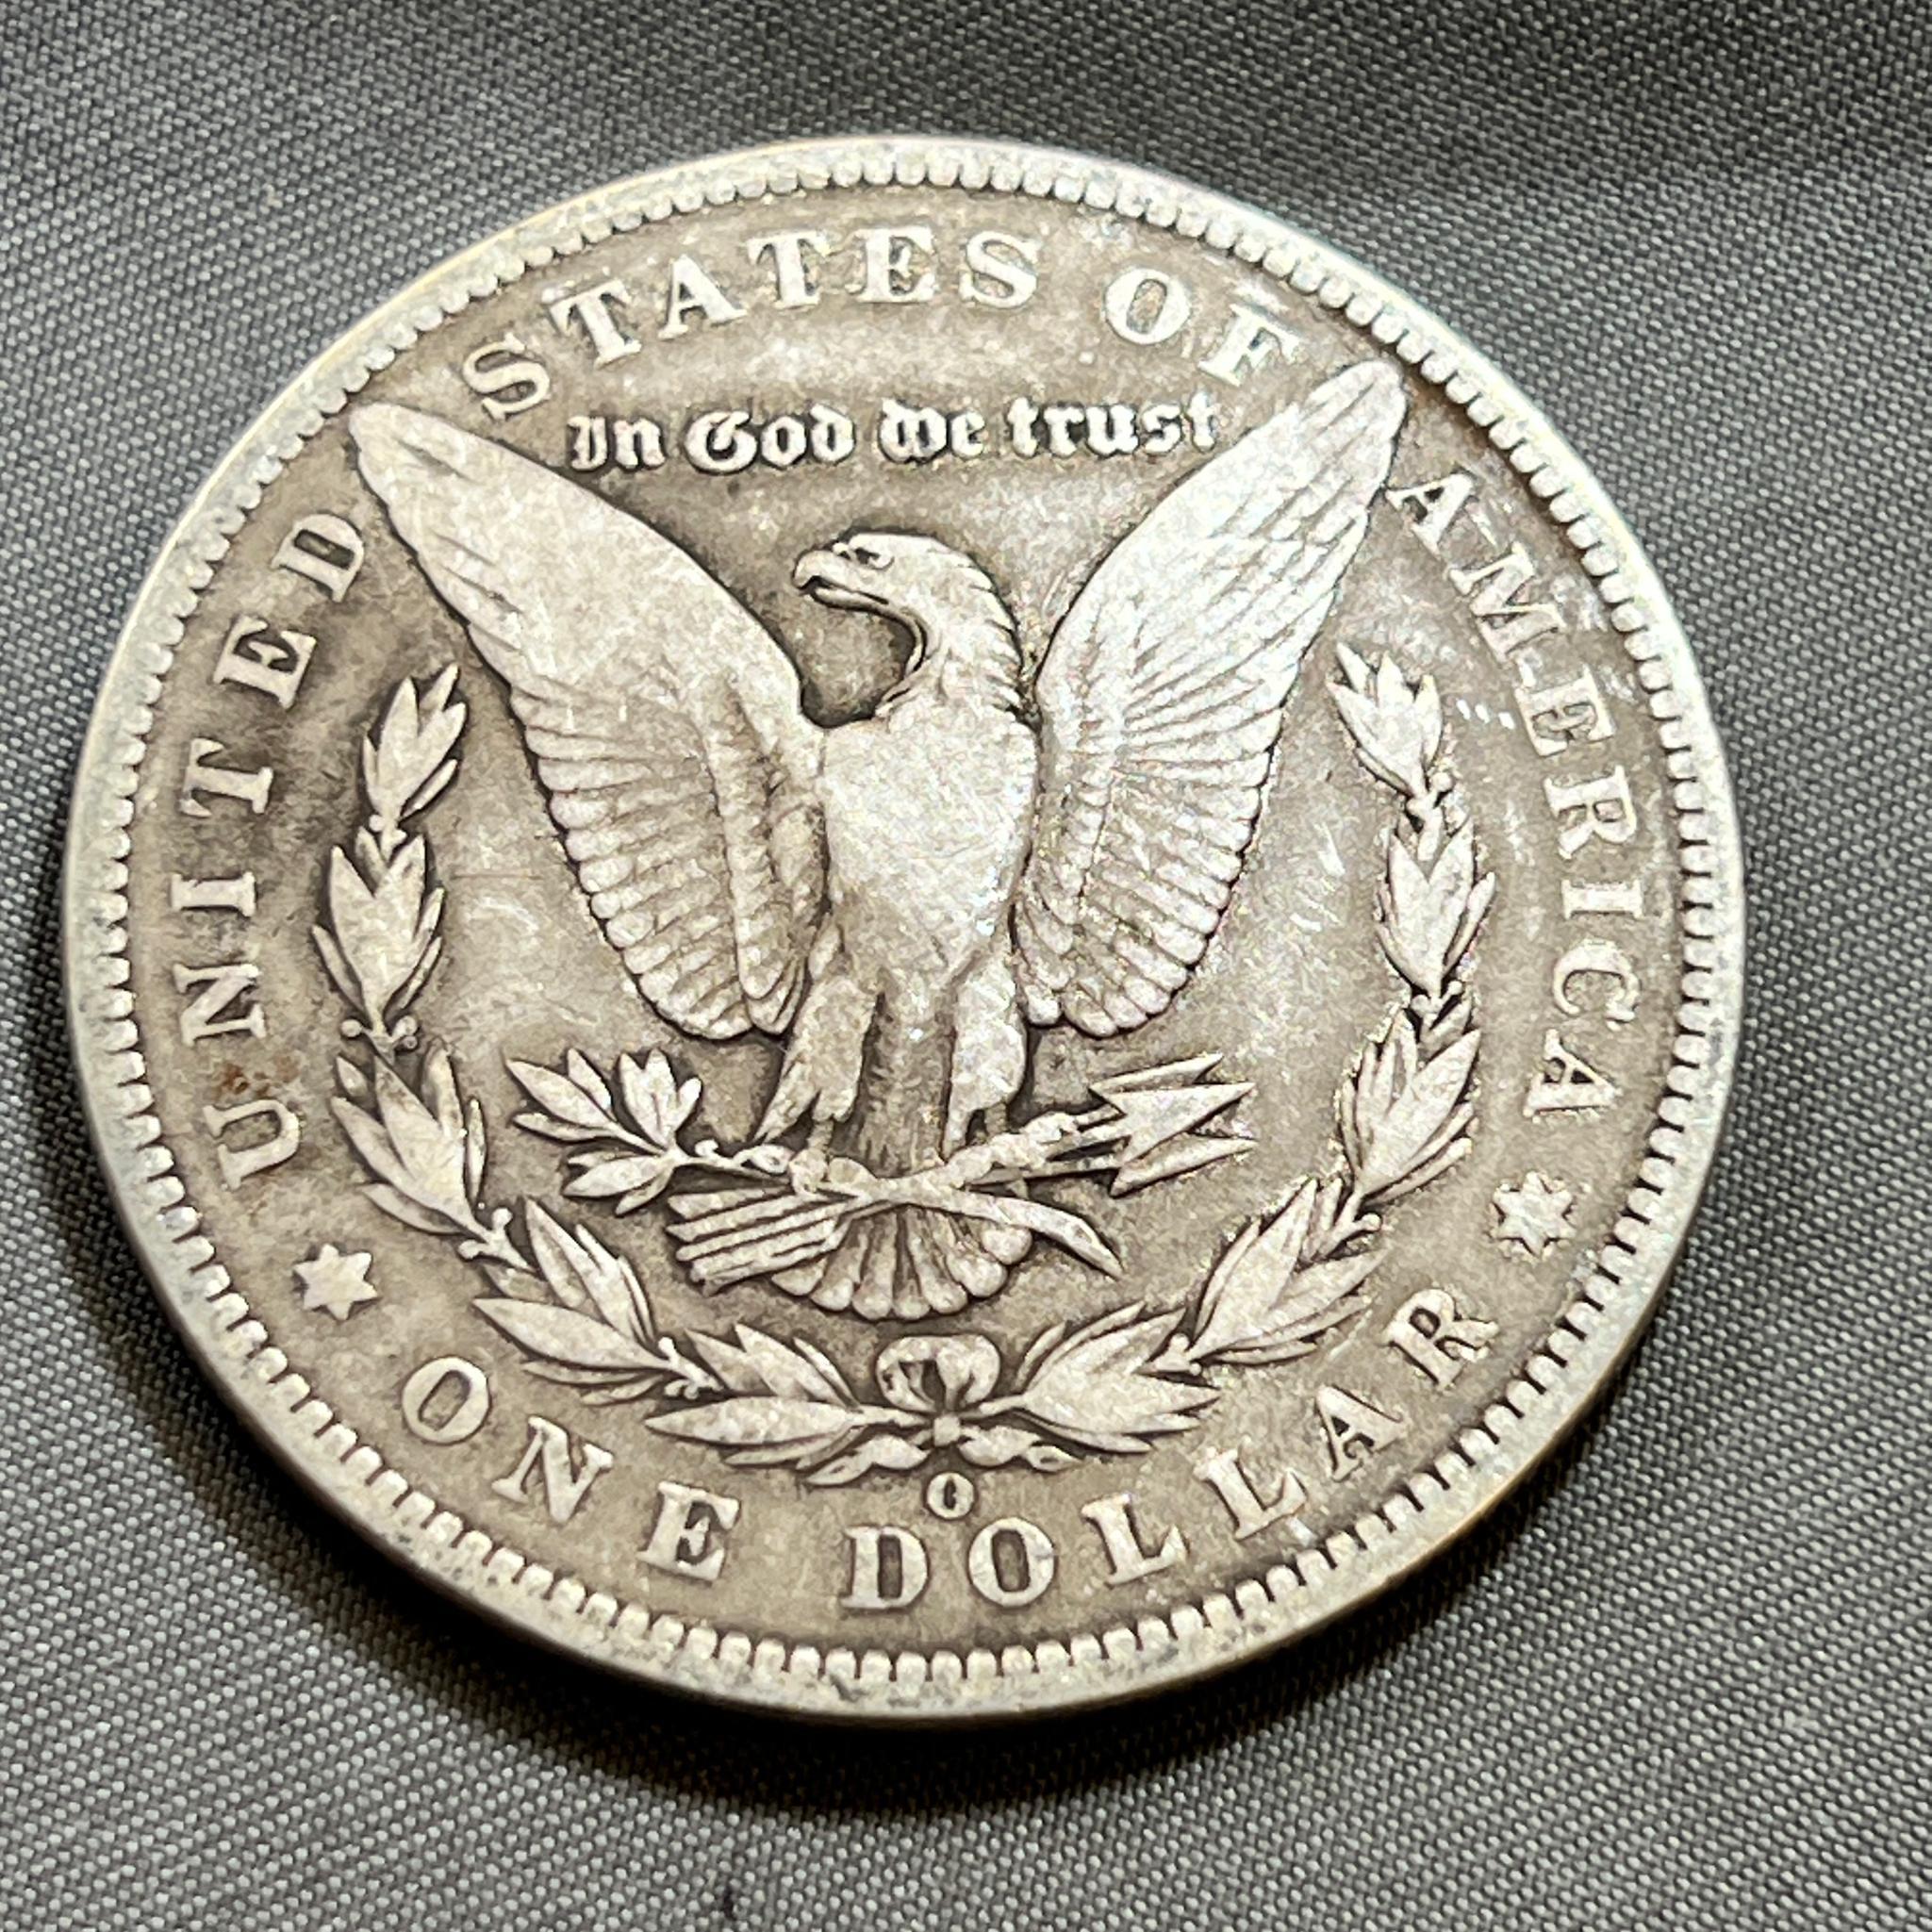 1888-O Morgan Silver Dollar, 90% Silver